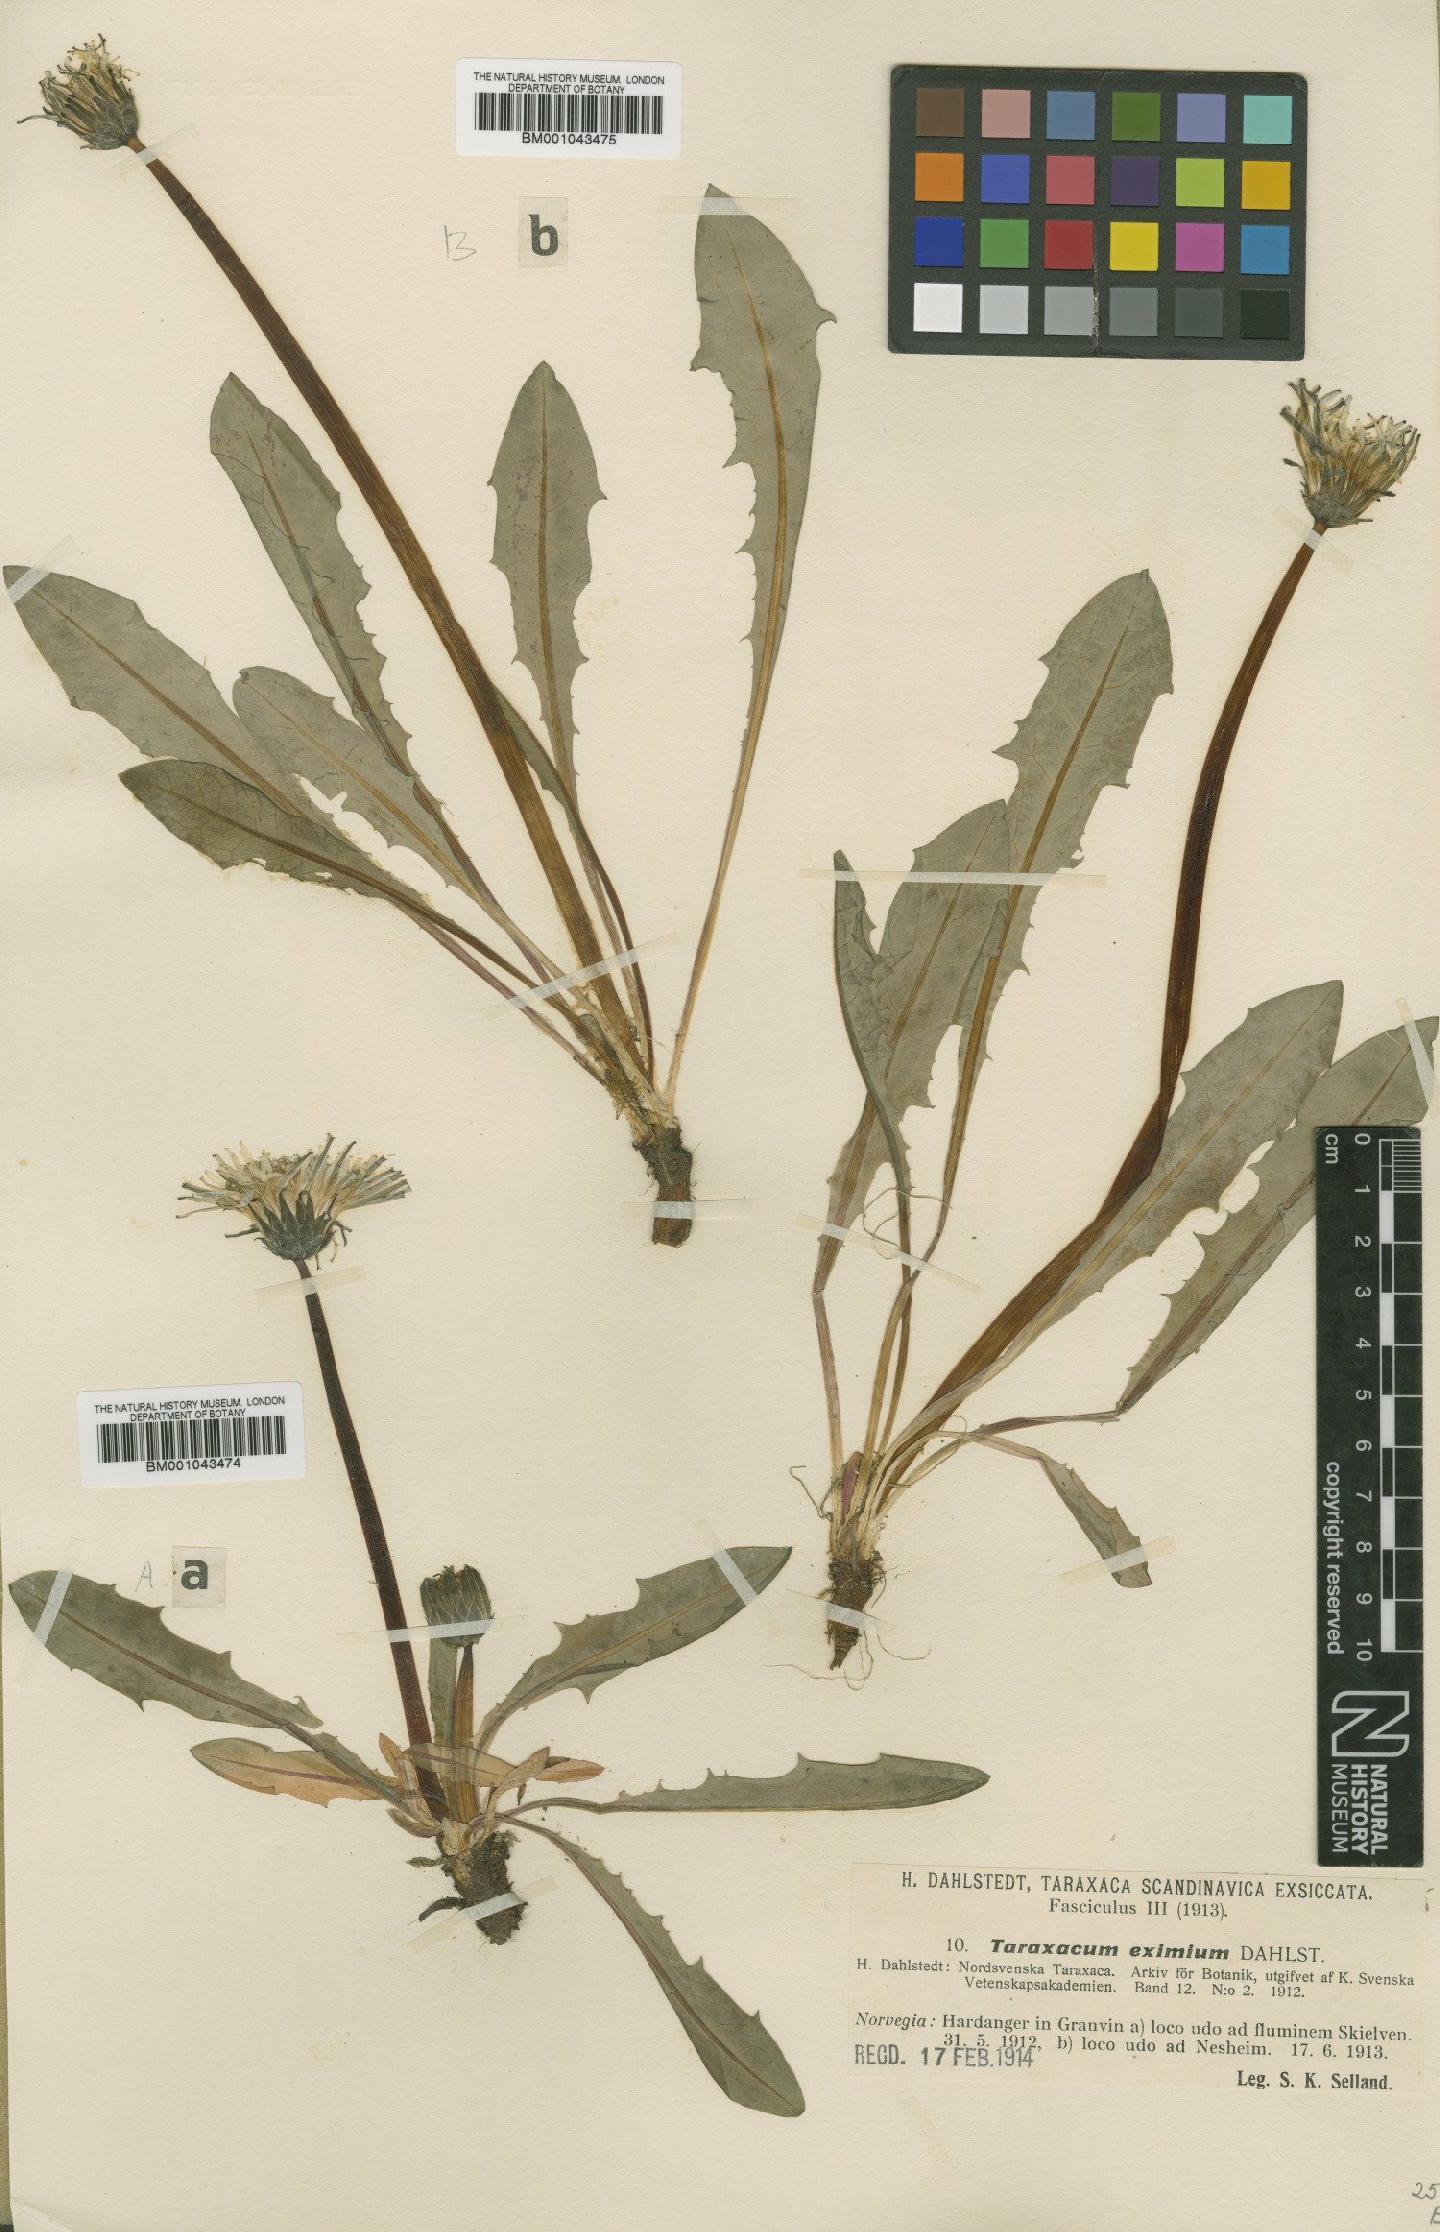 To NHMUK collection (Taraxacum eximium Dahlst.; Type; NHMUK:ecatalogue:1998518)